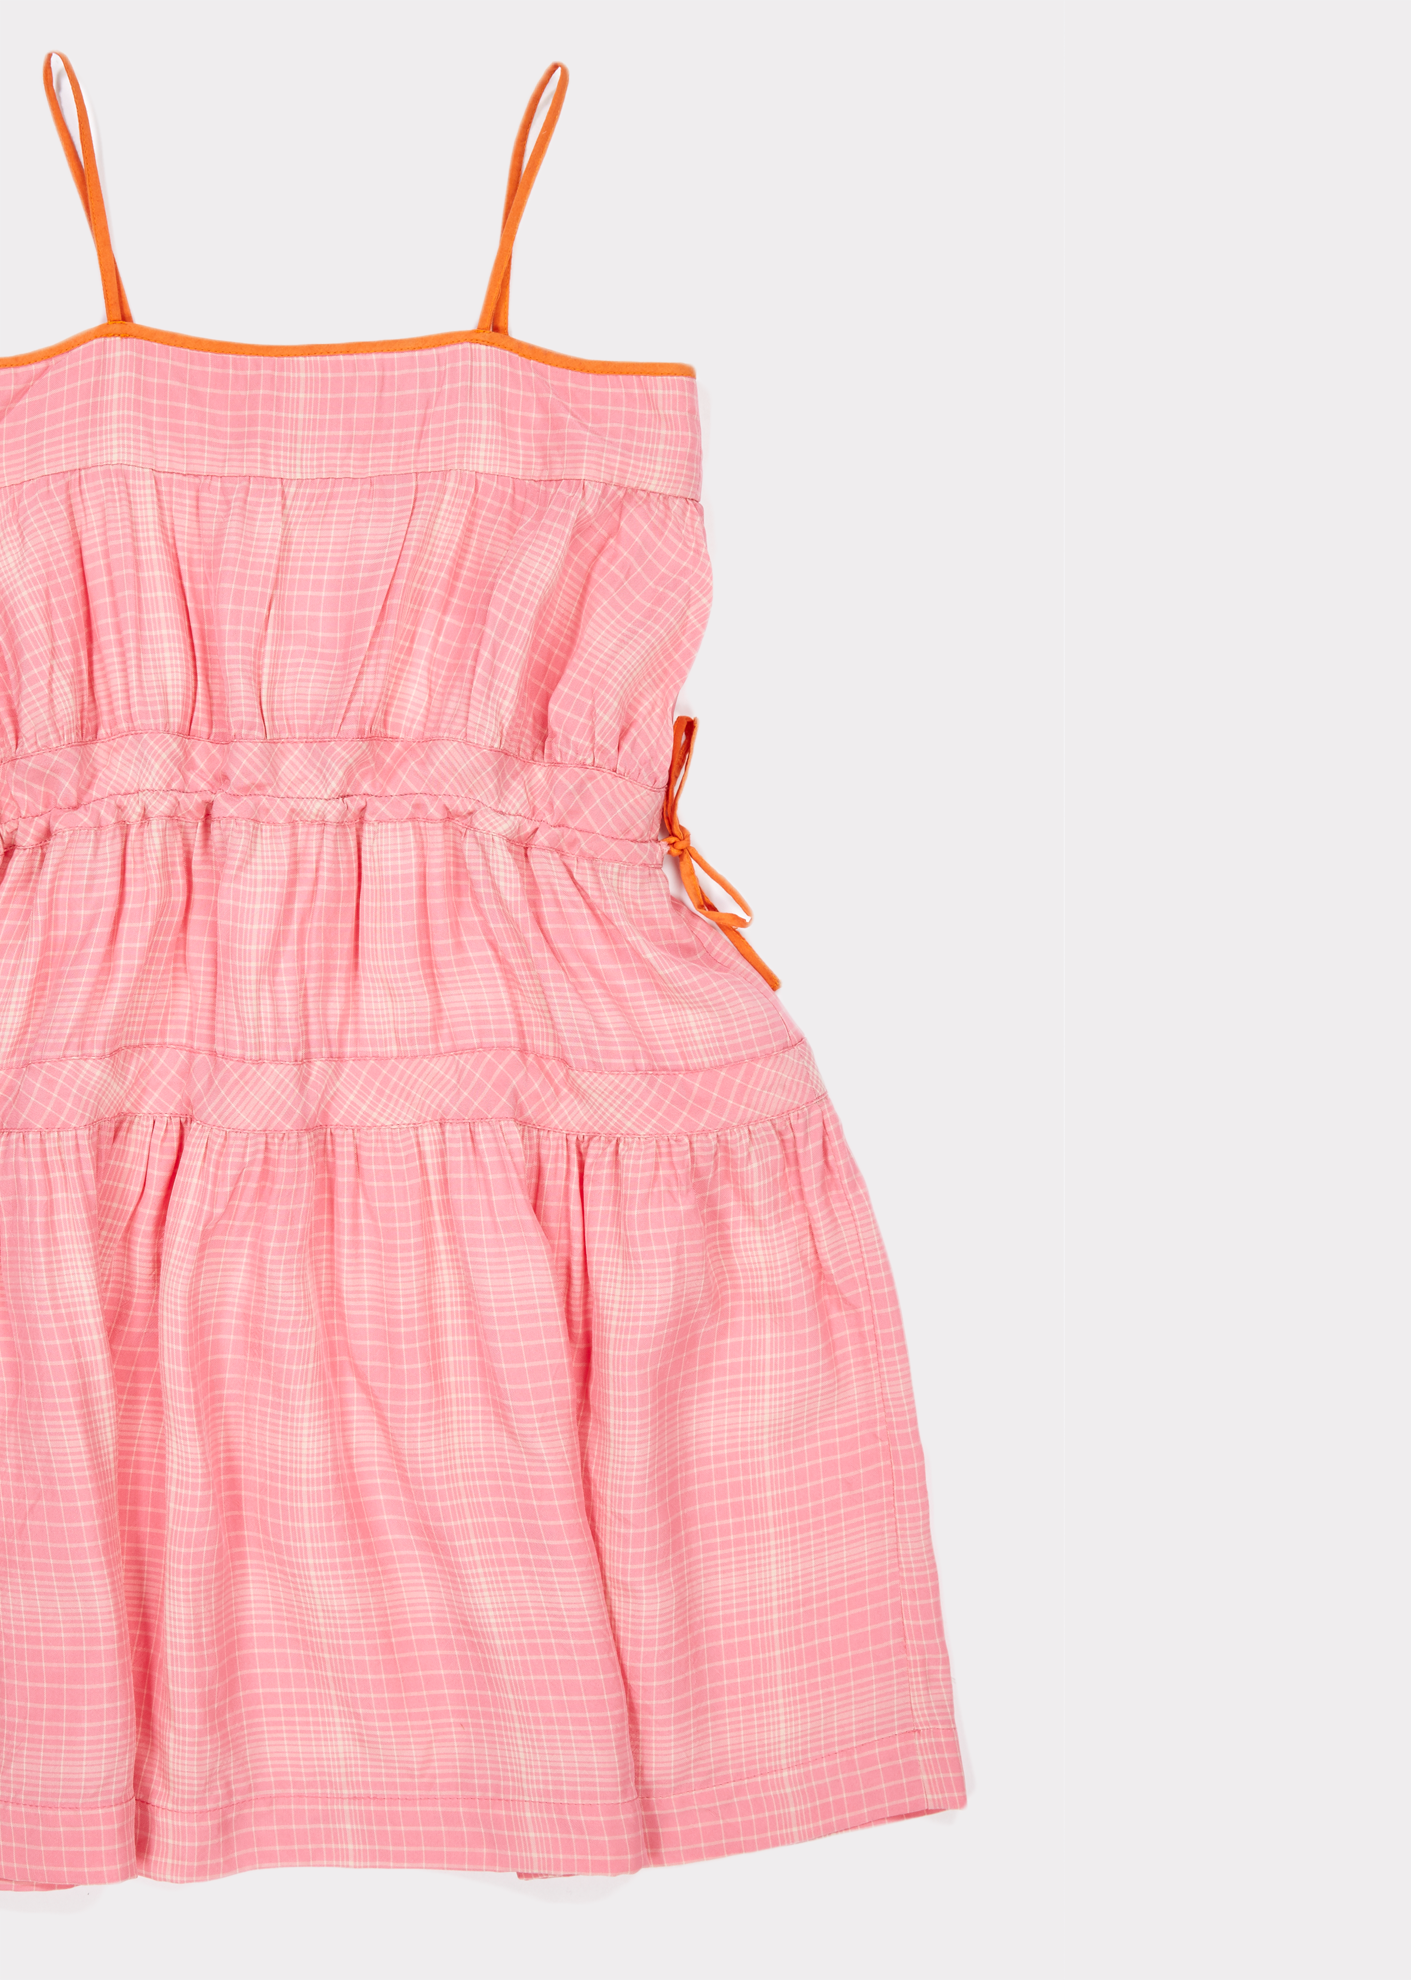 ALYSSUM DRESS,PINK - Cemarose Children's Fashion Boutique